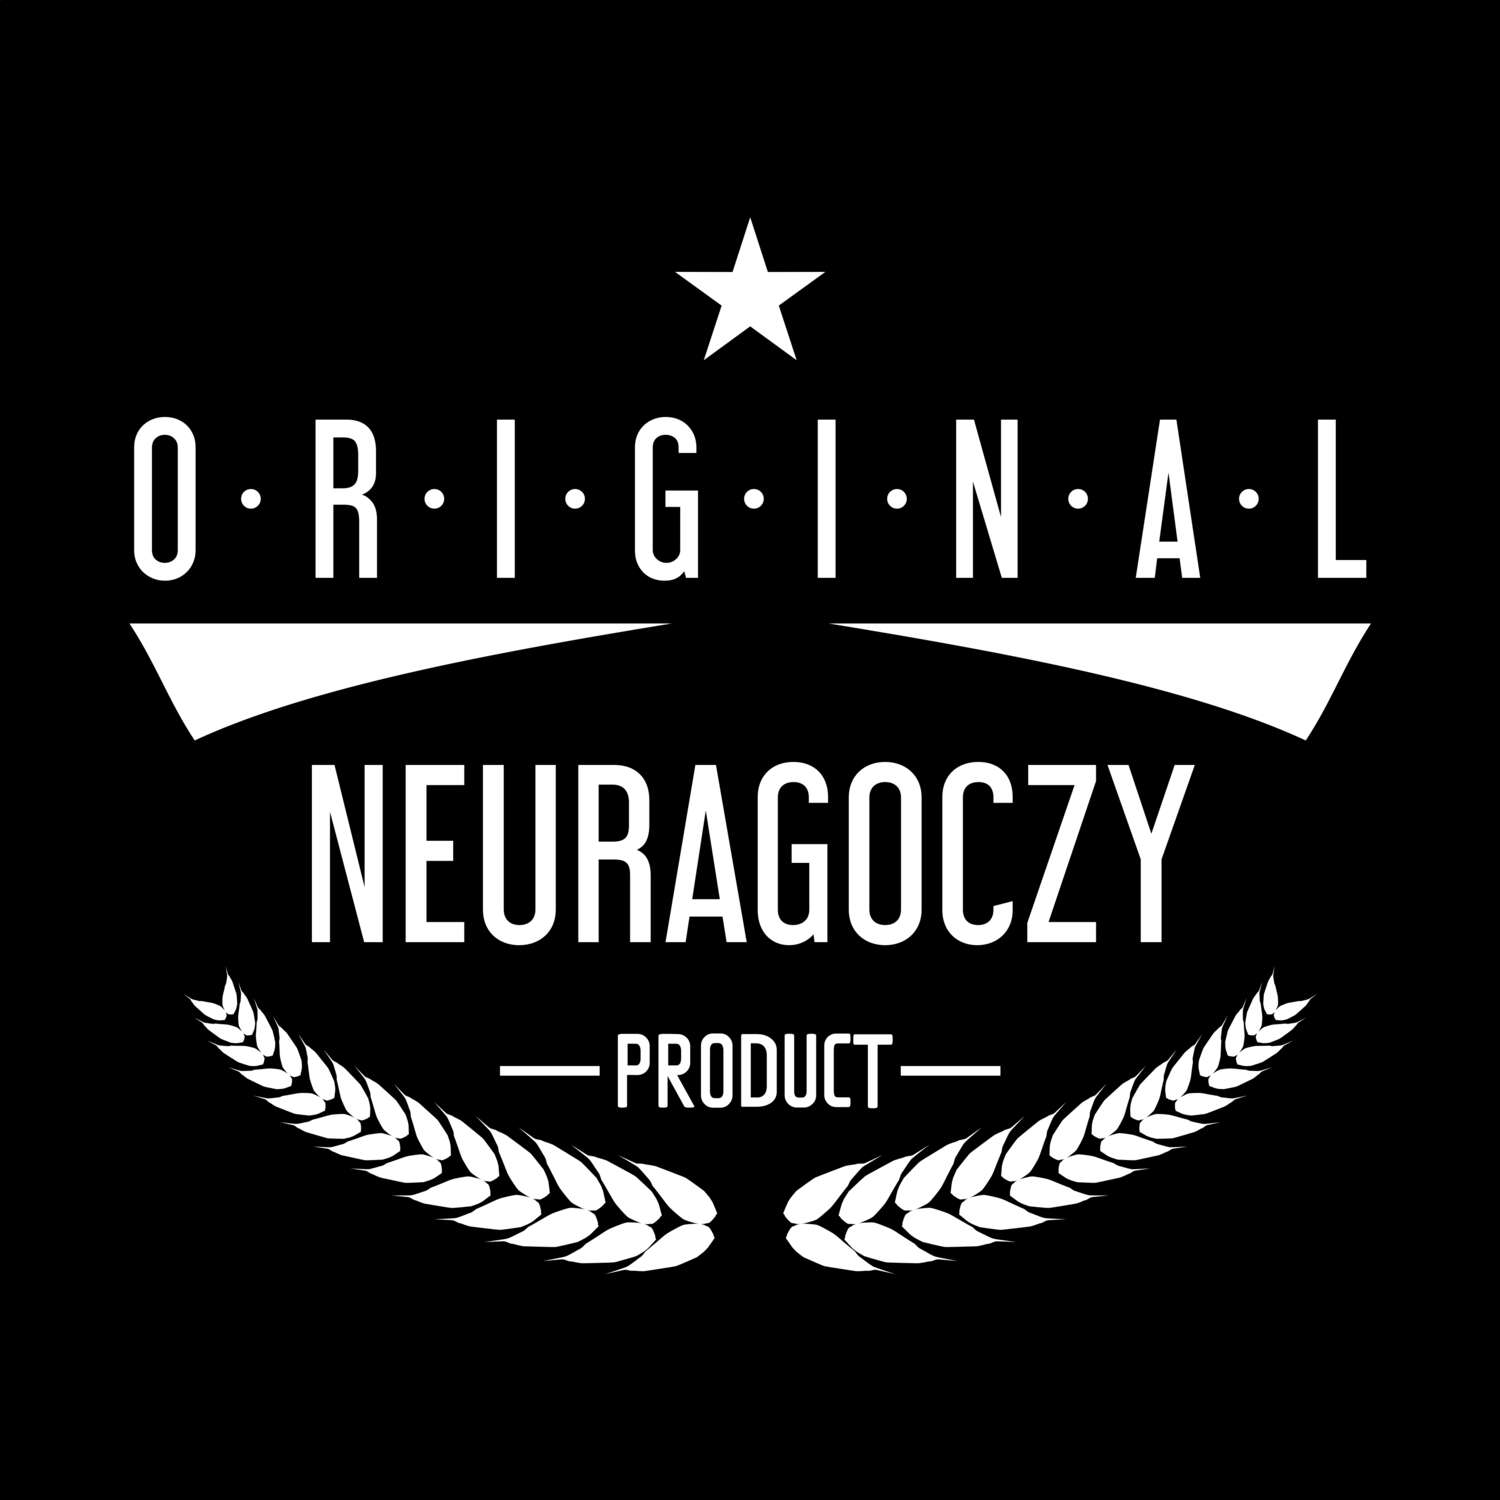 Neuragoczy T-Shirt »Original Product«